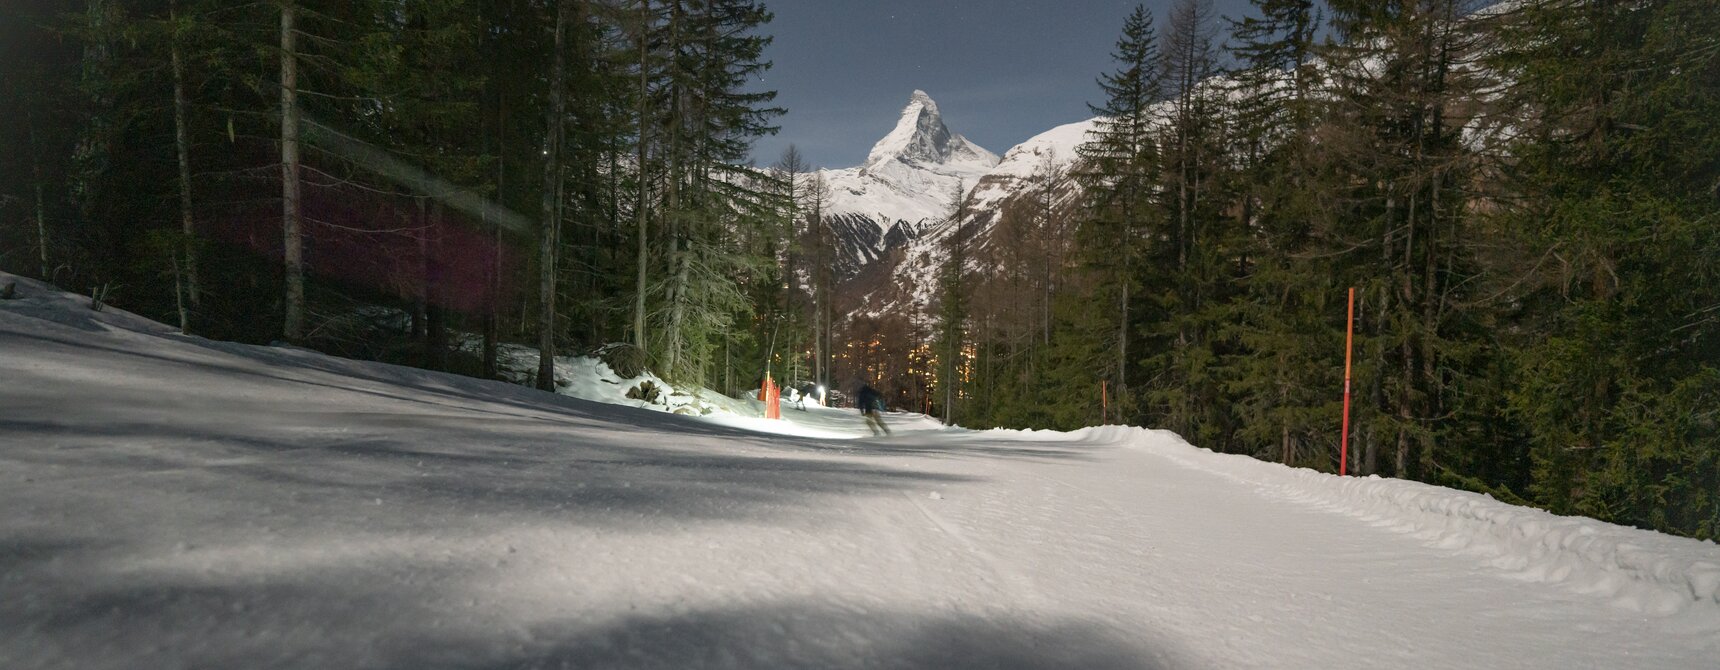 Piste in der Dunkelheit mit einem Skifahrer , das Matterhorn im Hintergrund | © Gabriel_Perren